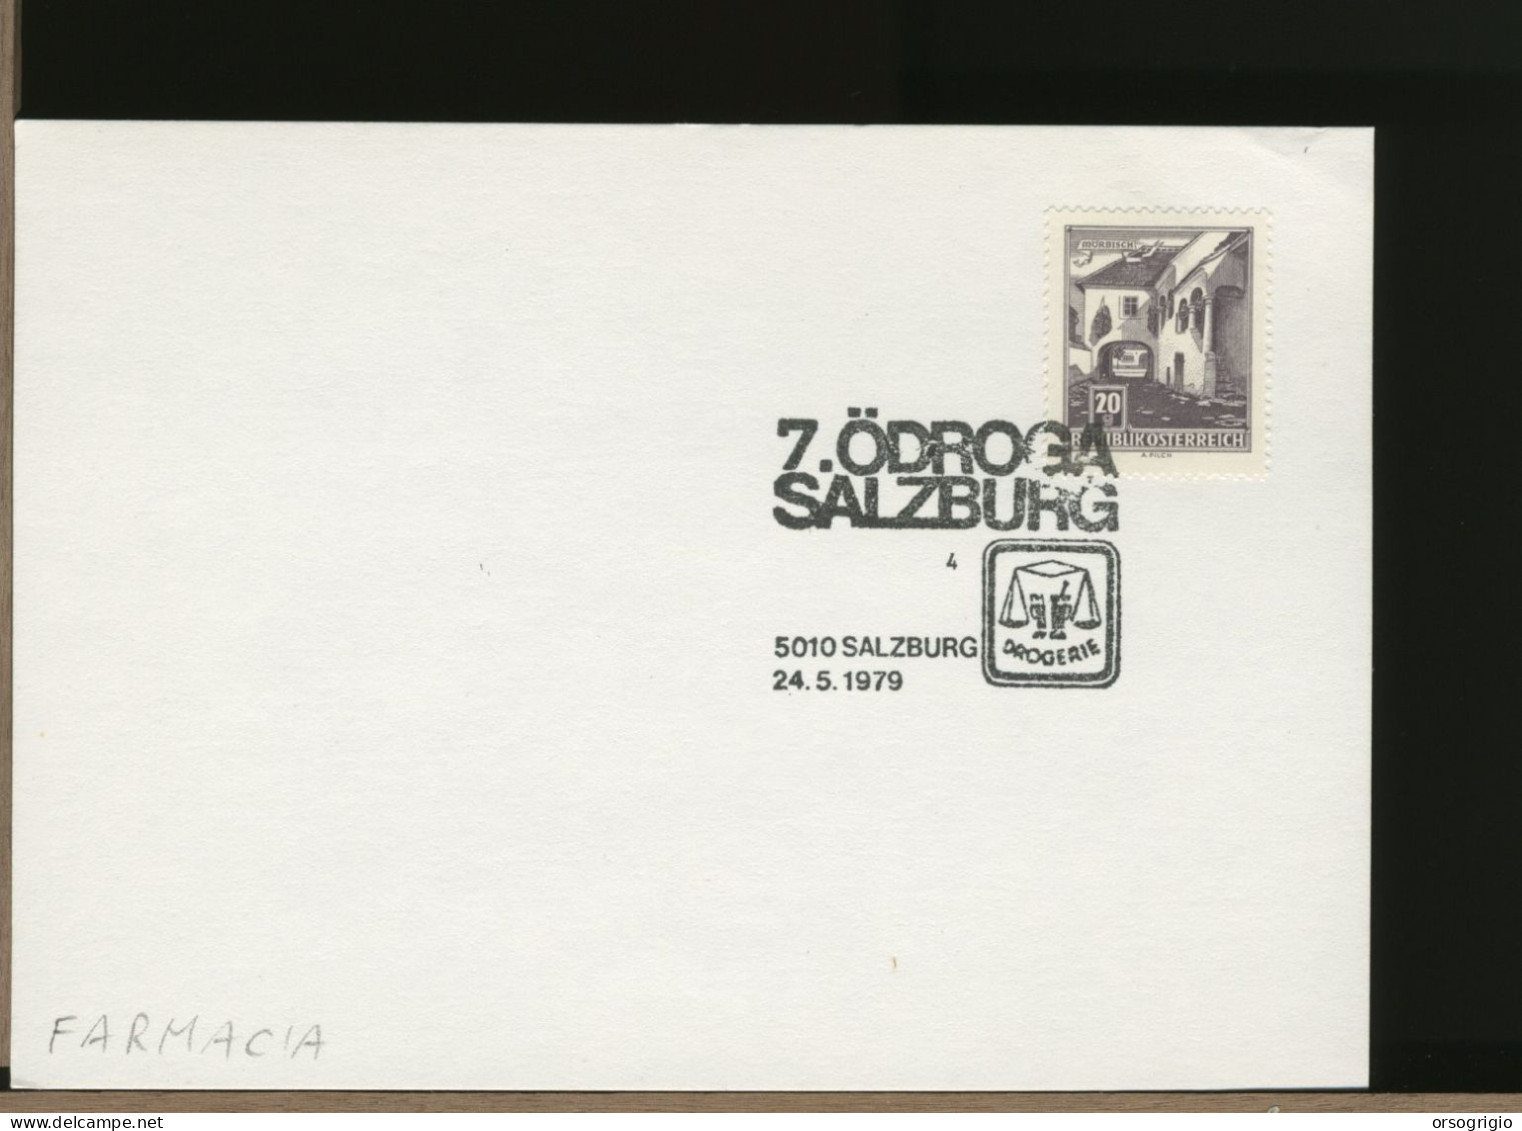 AUSTRIA OSTERREICH  -  SALZBURG 1979 - ODROGA  -  DROGERIE   FARMACIA - Pharmazie